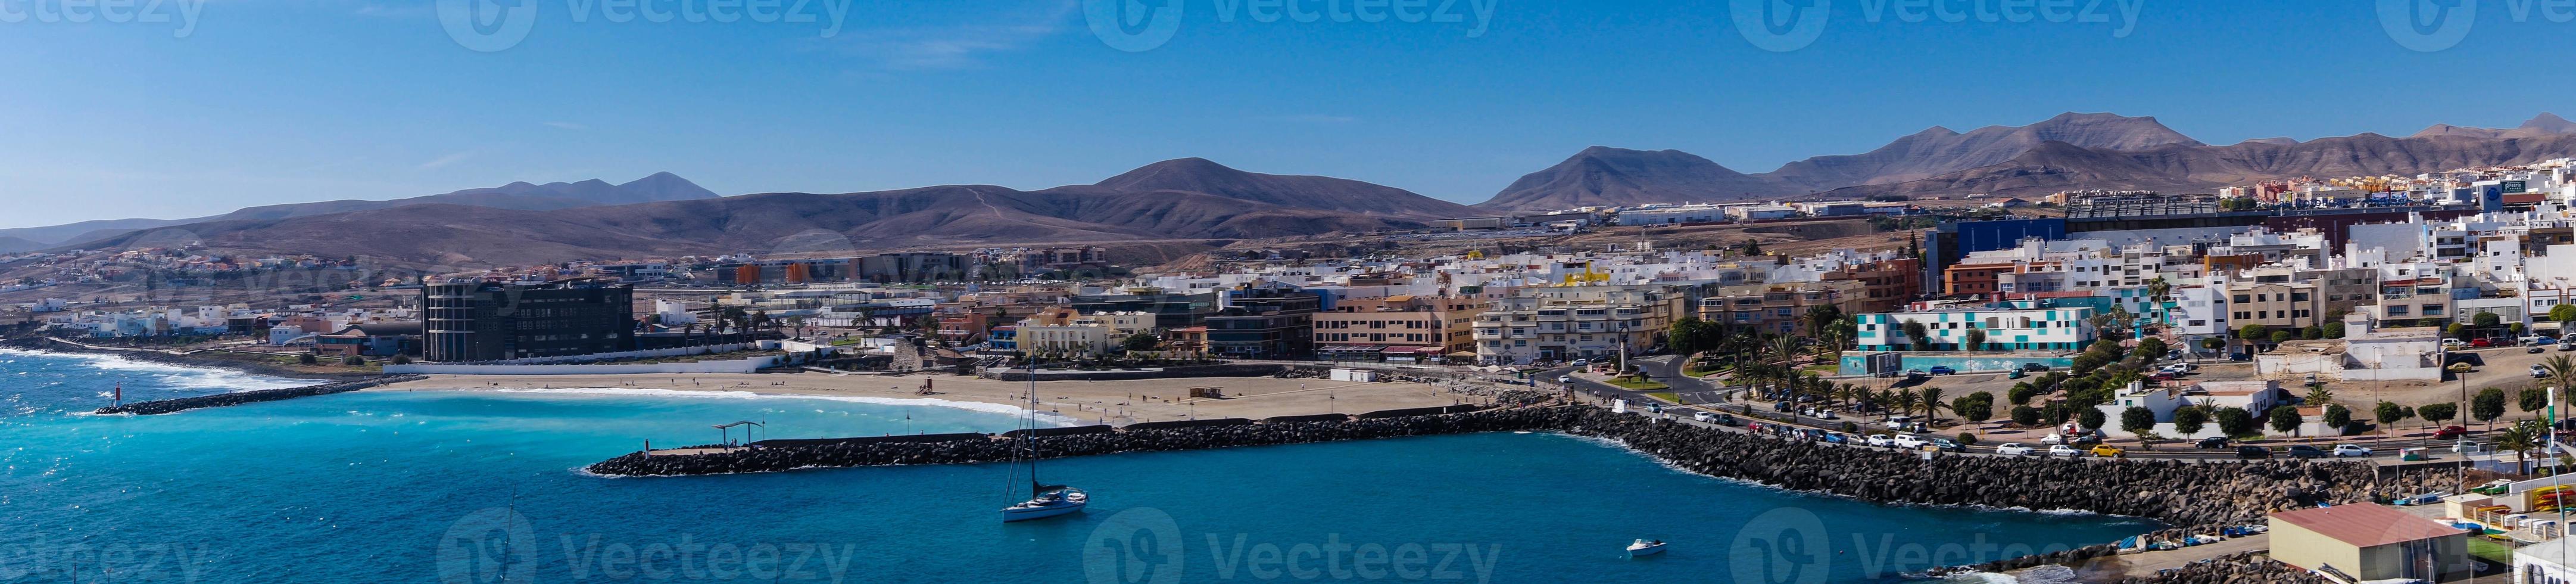 Puerto del Rosario Fuerteventura photo